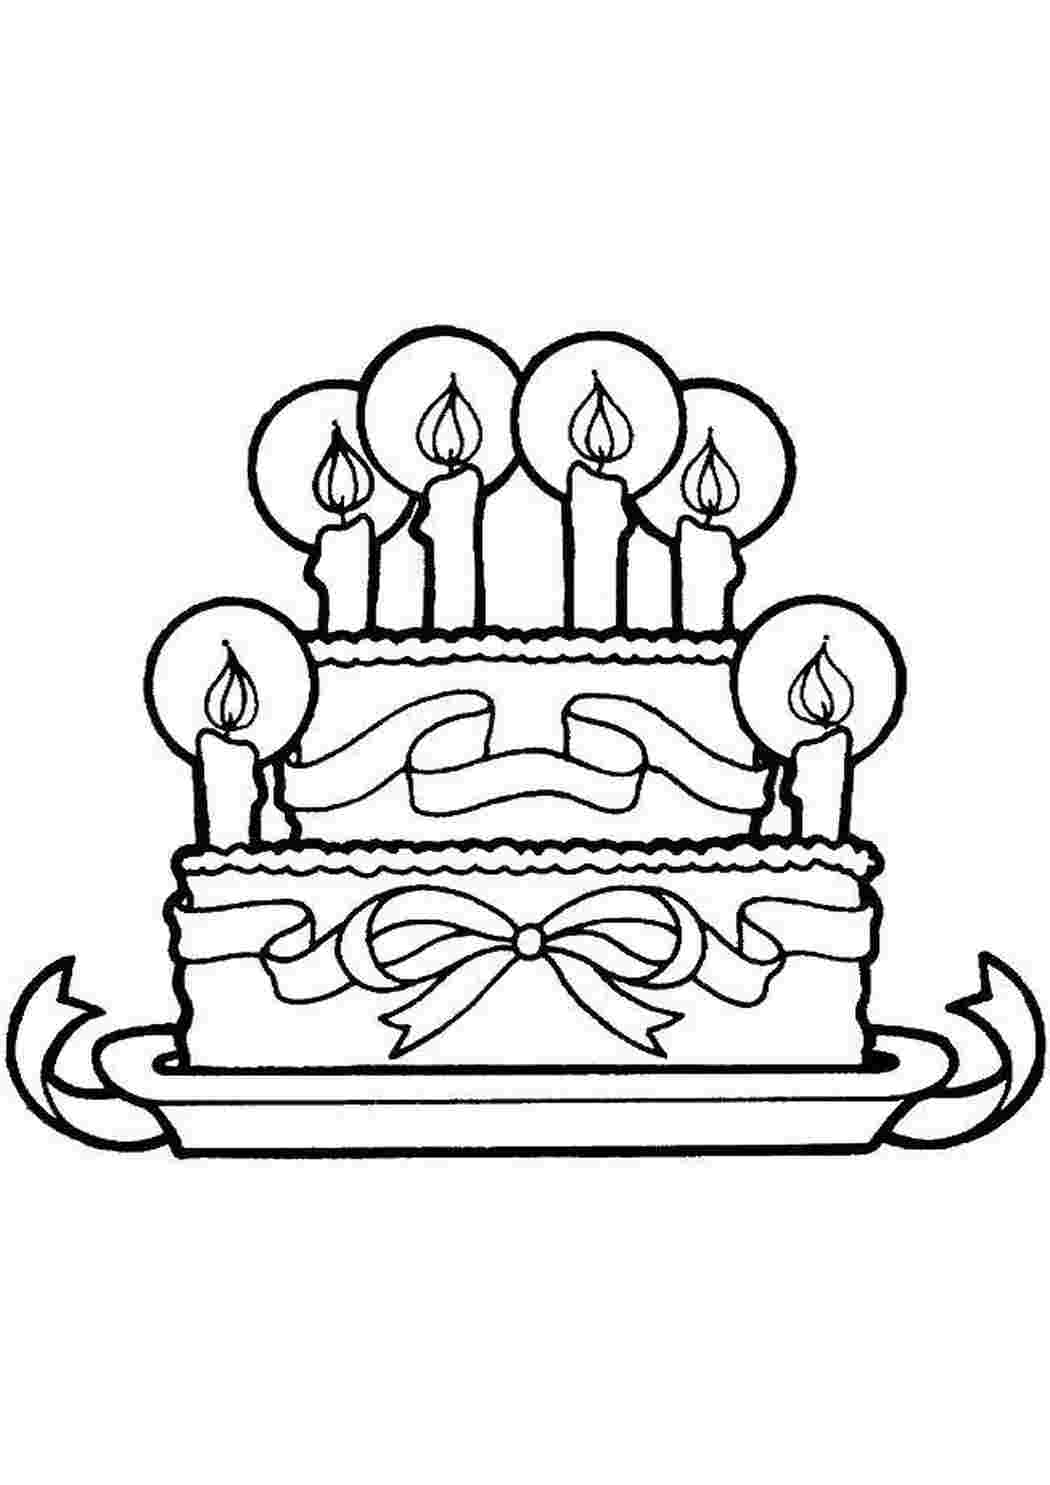 Торт на день рождения со свечами подходит для детской раскраски страницы векторной иллюстрации